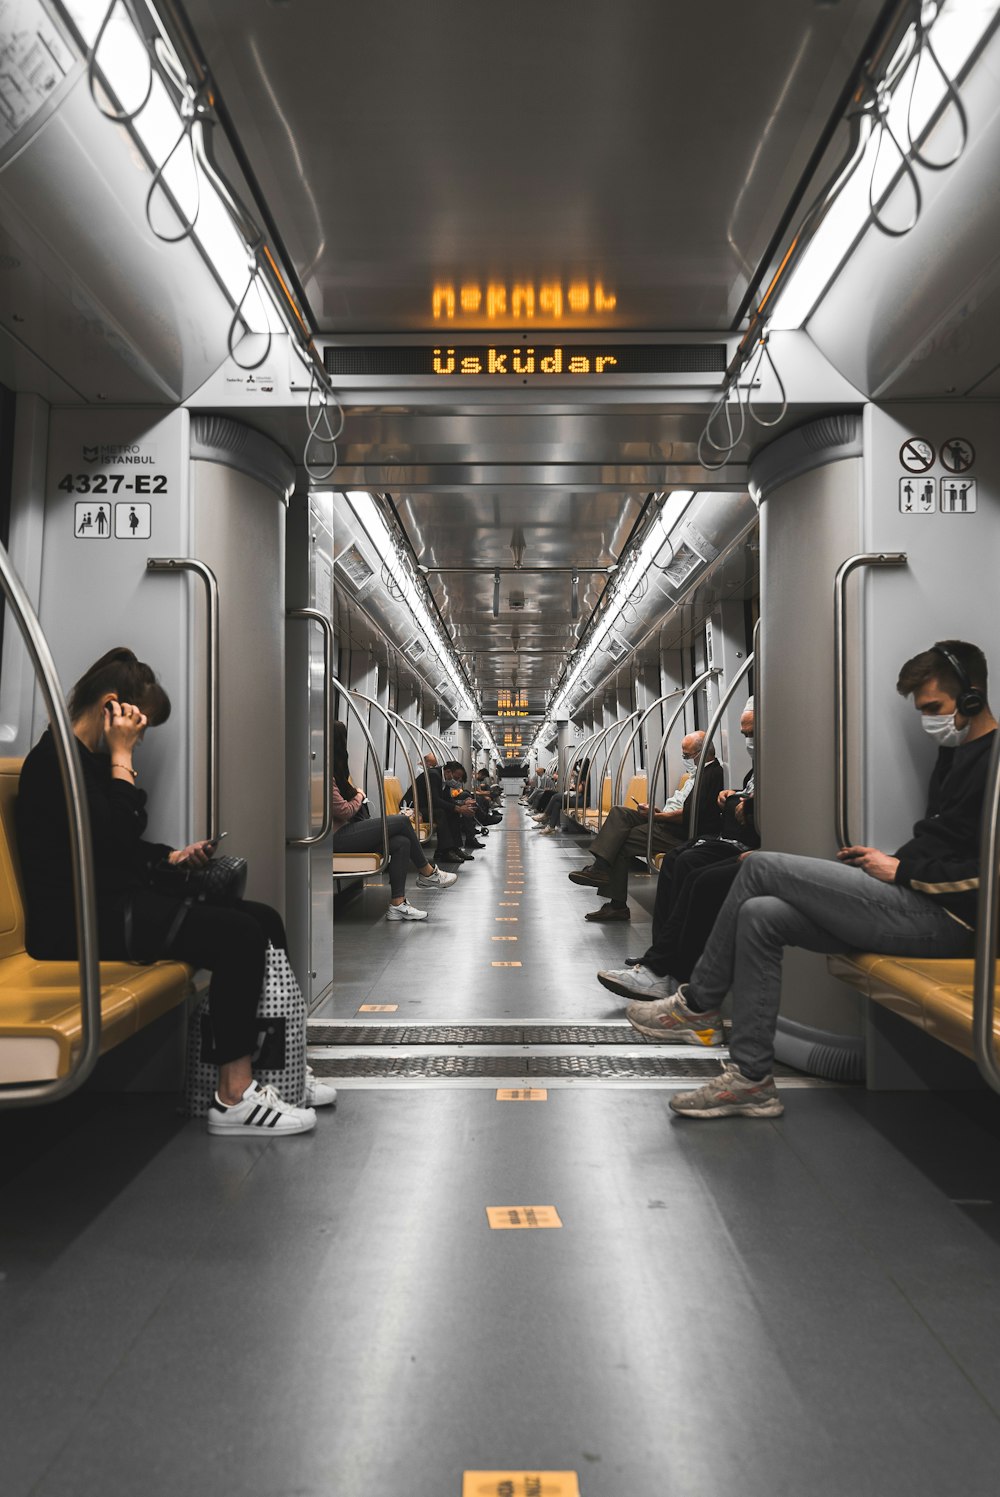 personas sentadas en el asiento del tren